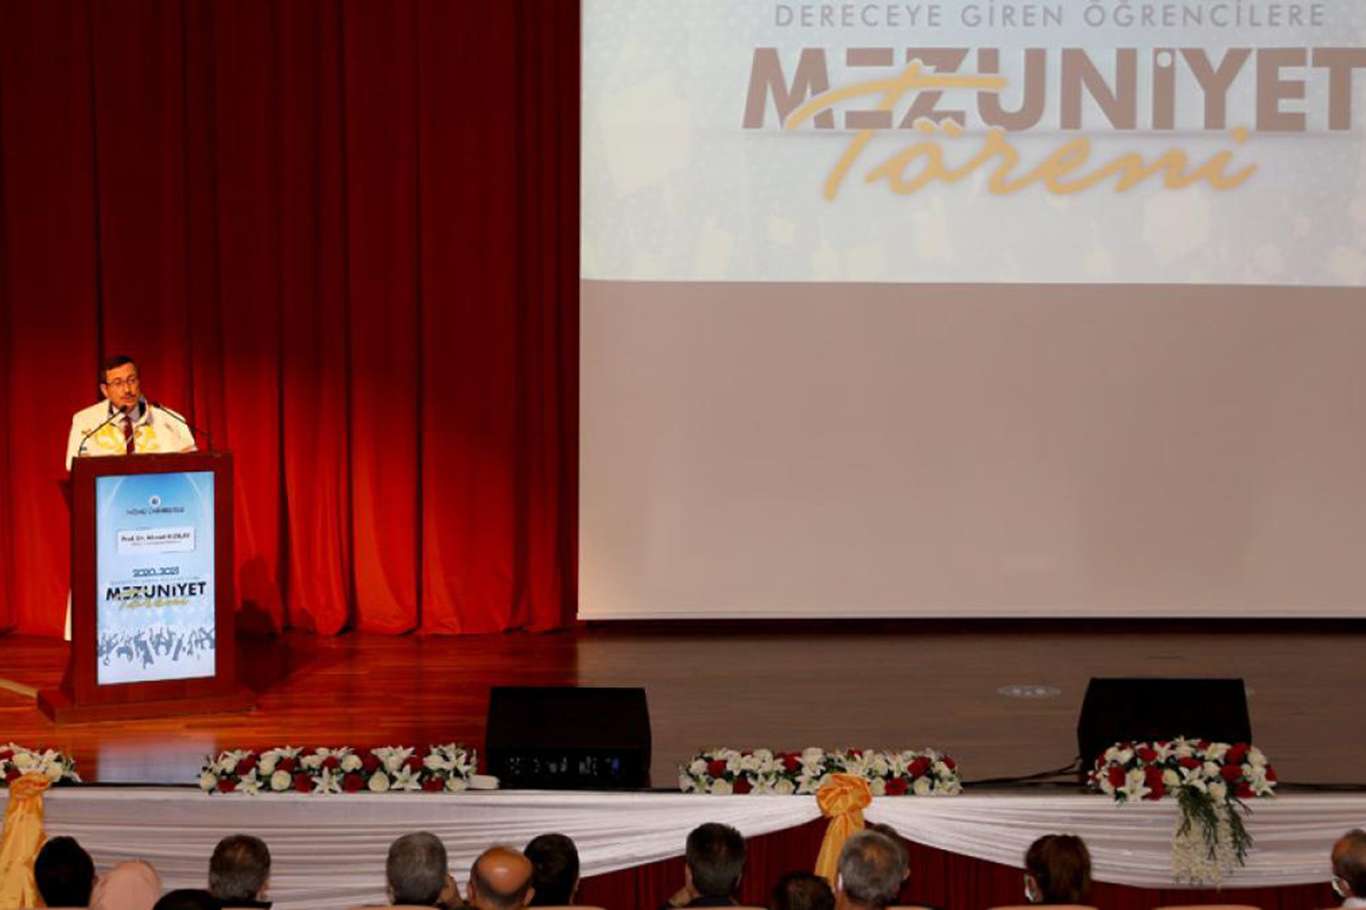 Rektör Kızılay'dan mezuniyet törenindeki yeminde "Cinsel yönelim" vurgusuna tepki